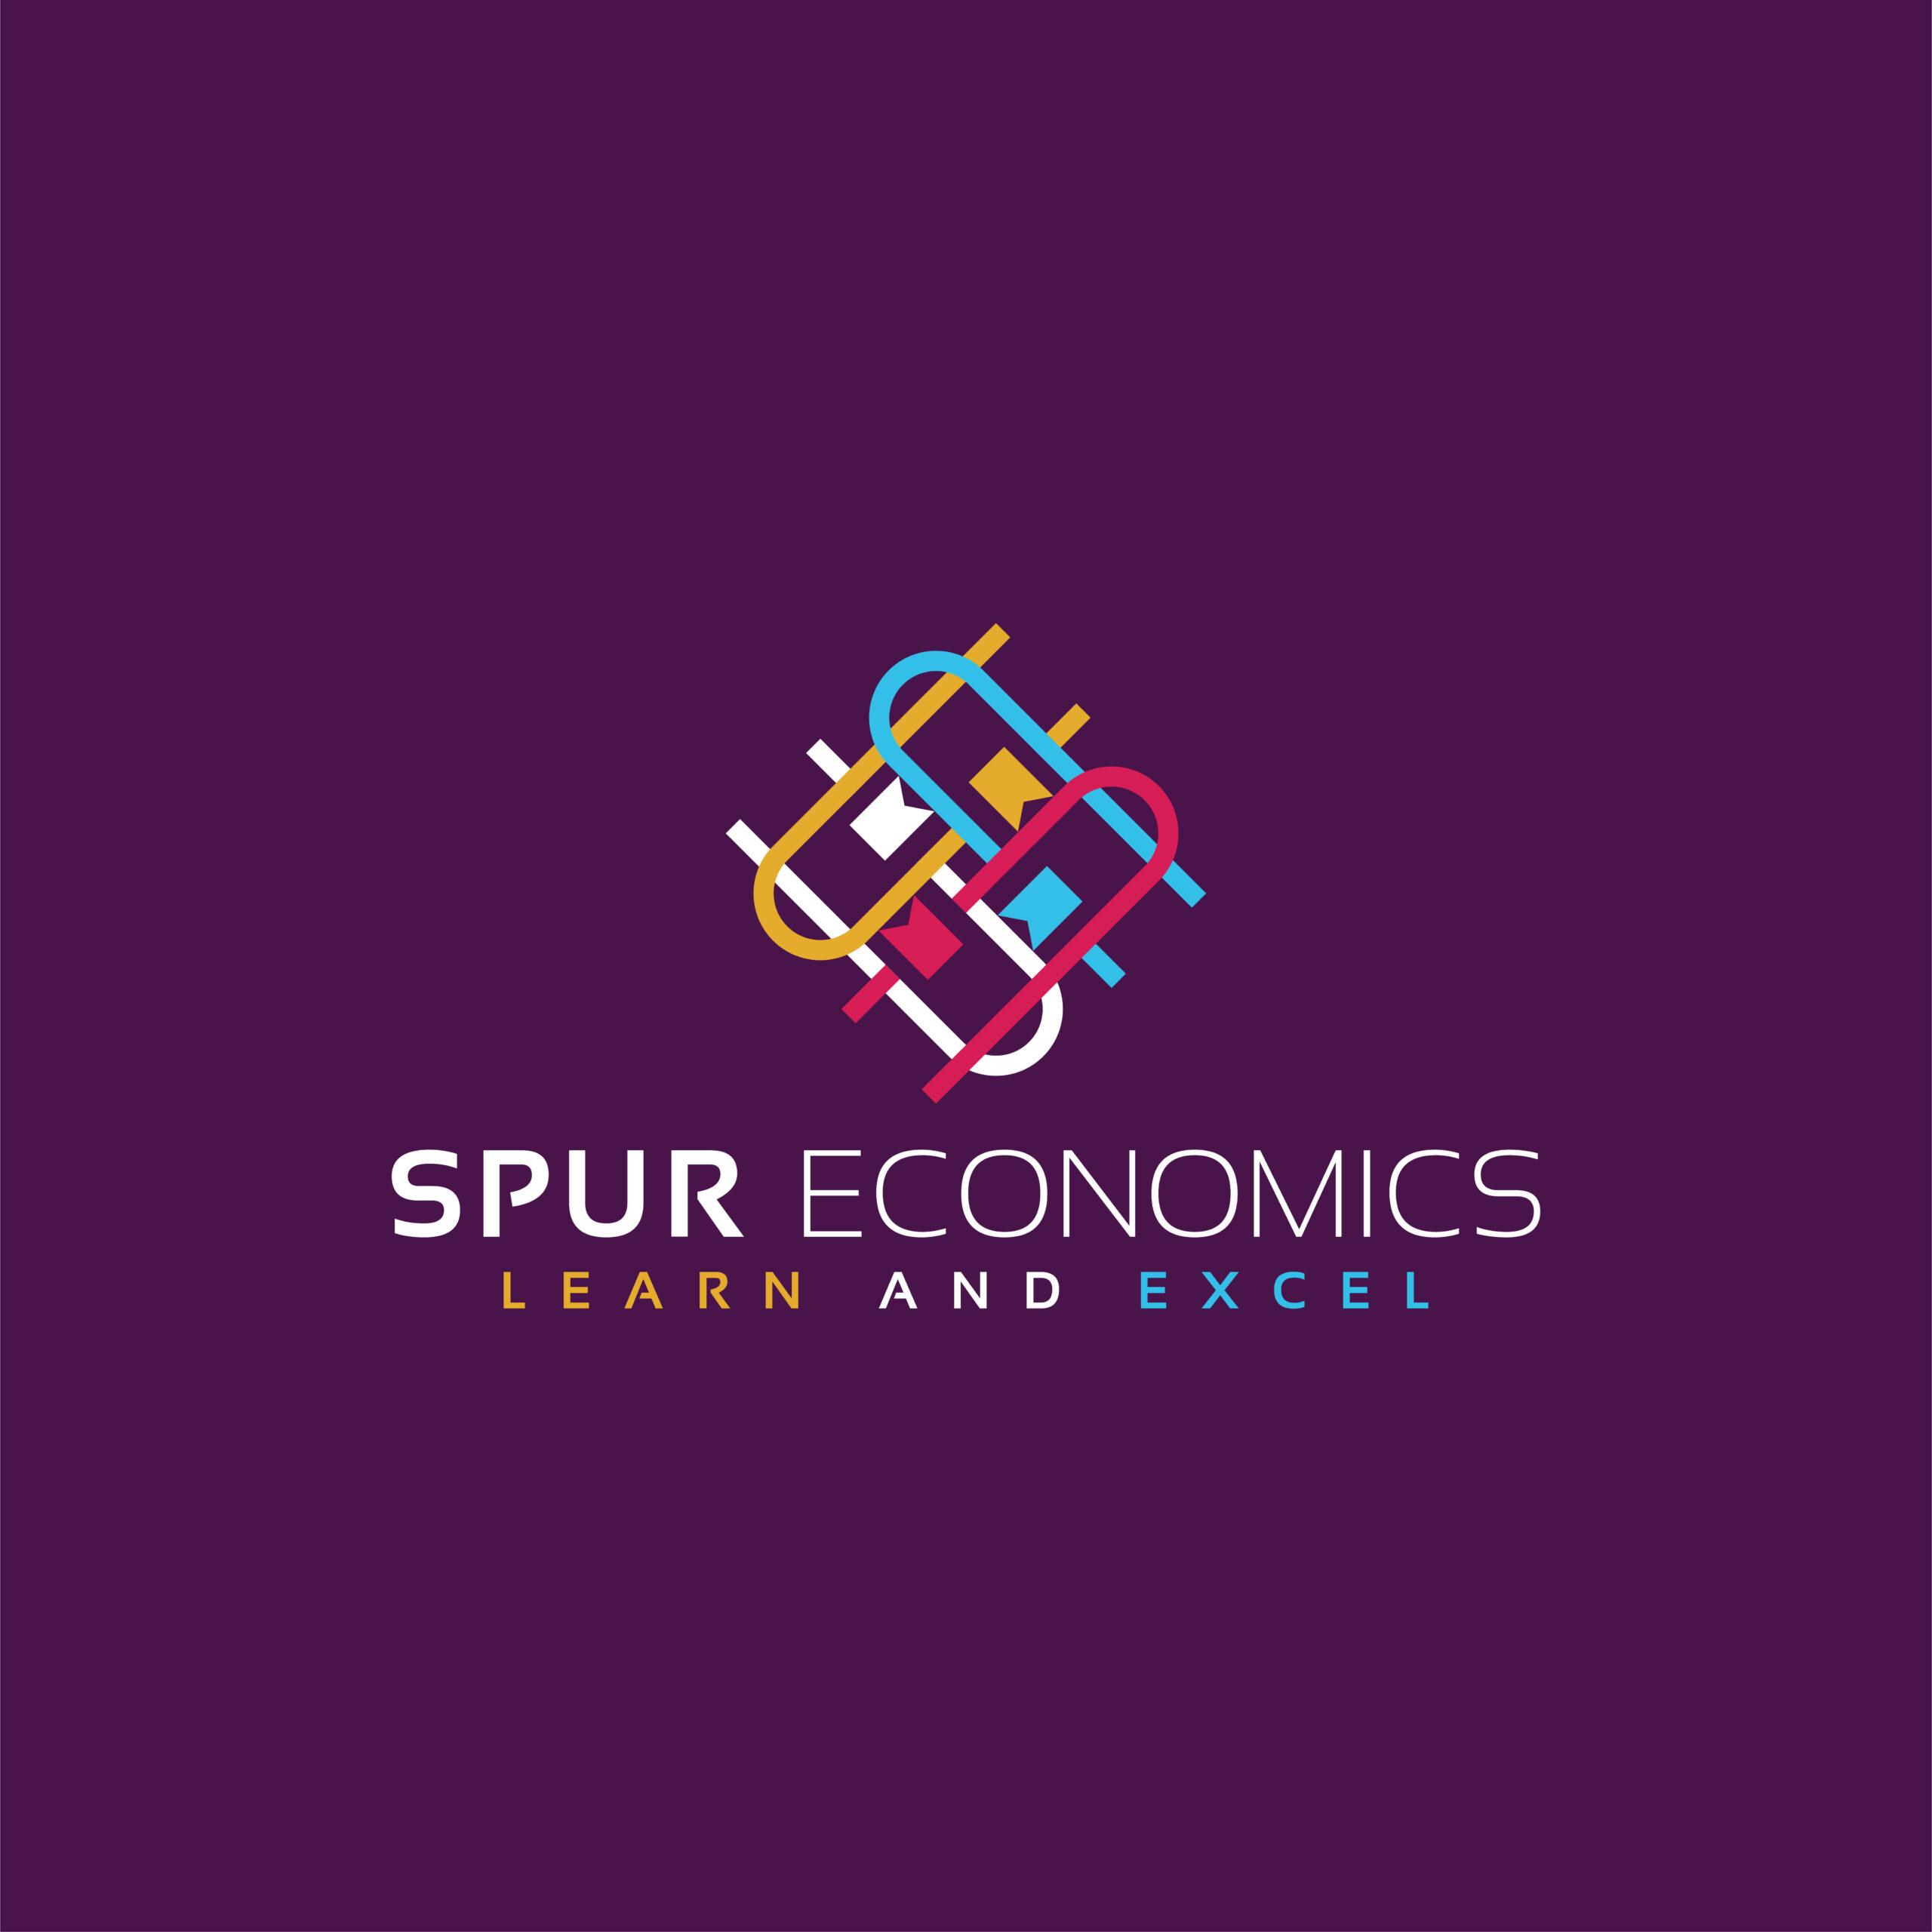 SPUR ECONOMICS